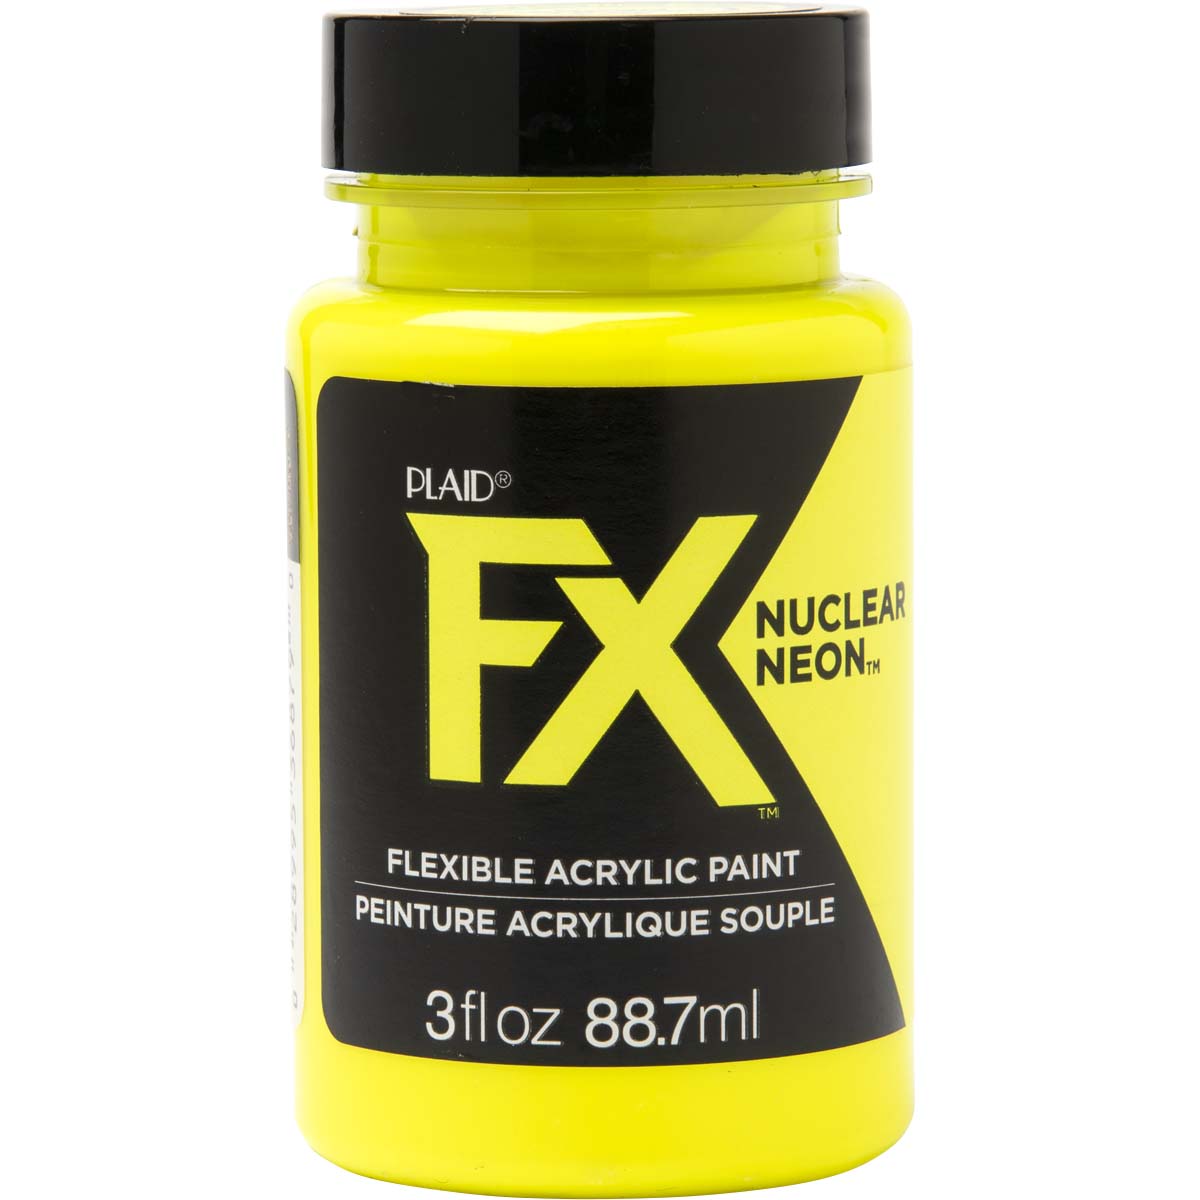 PlaidFX Nuclear Neon Flexible Acrylic Paint - Shocker, 3 oz. - 36879